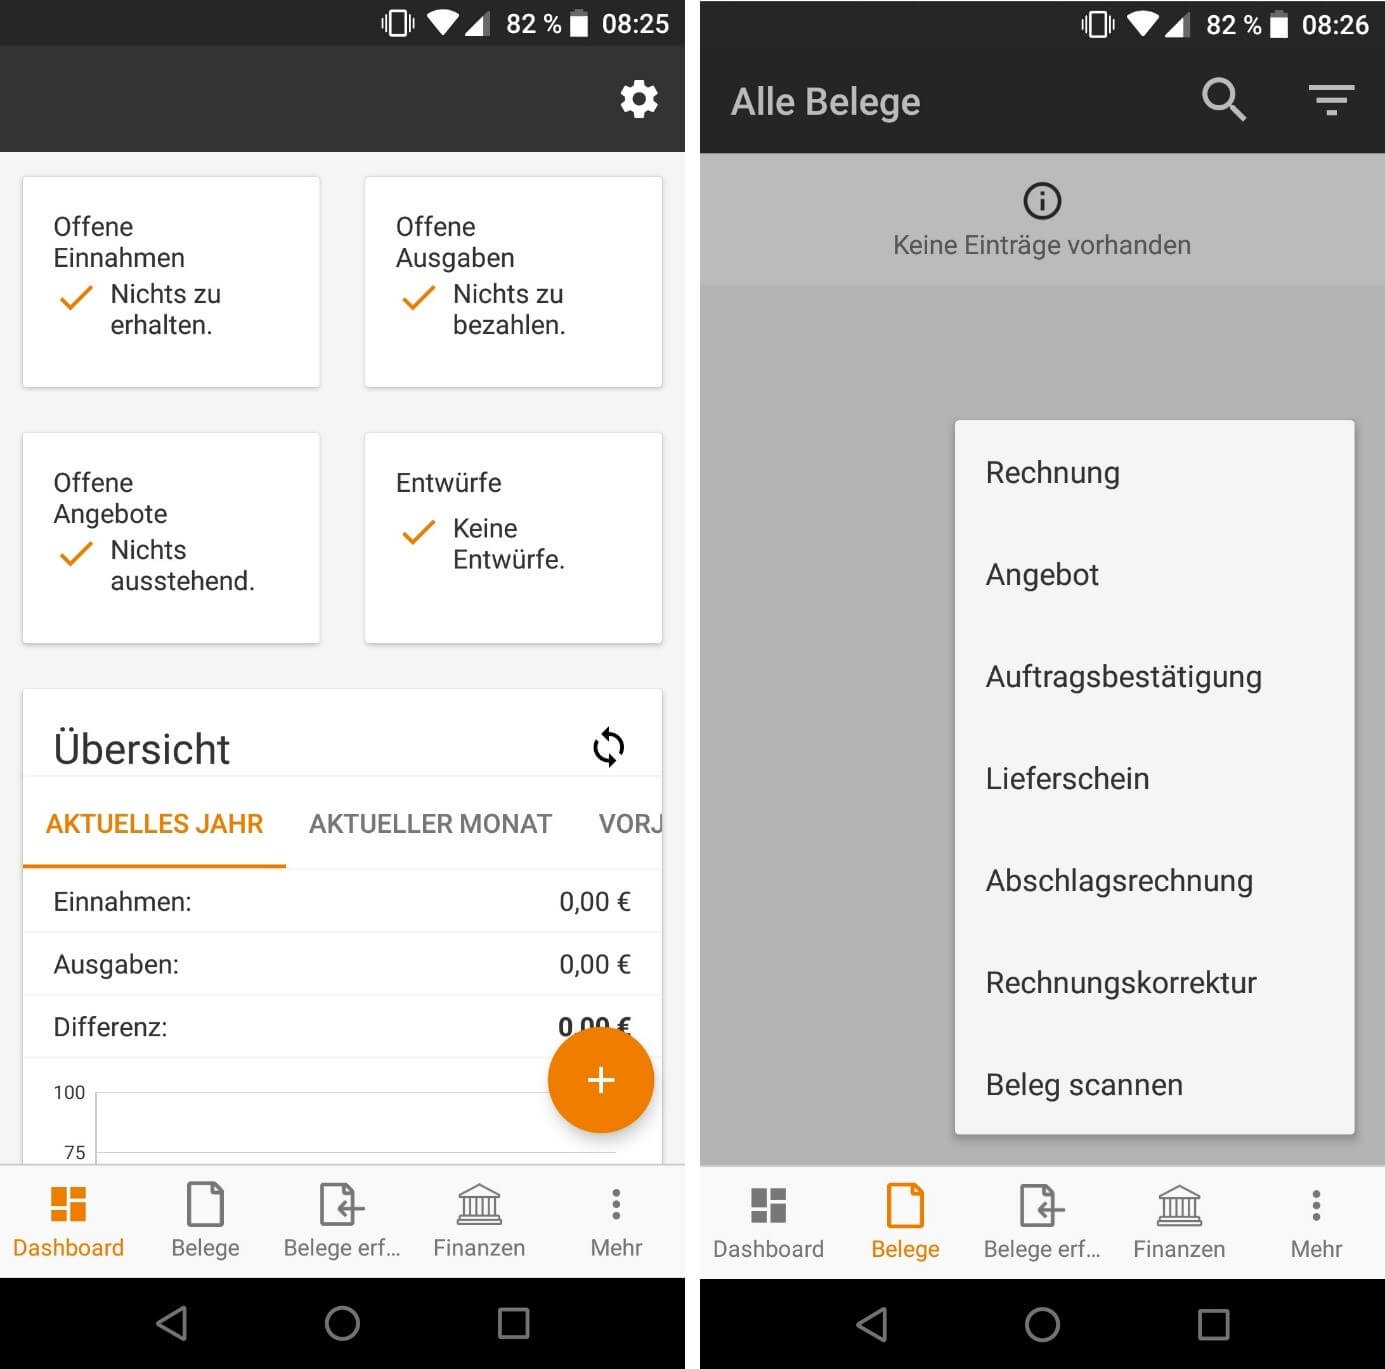 lexoffice App auf einem Android-Smartphone: Dashboard und Belege-Menü